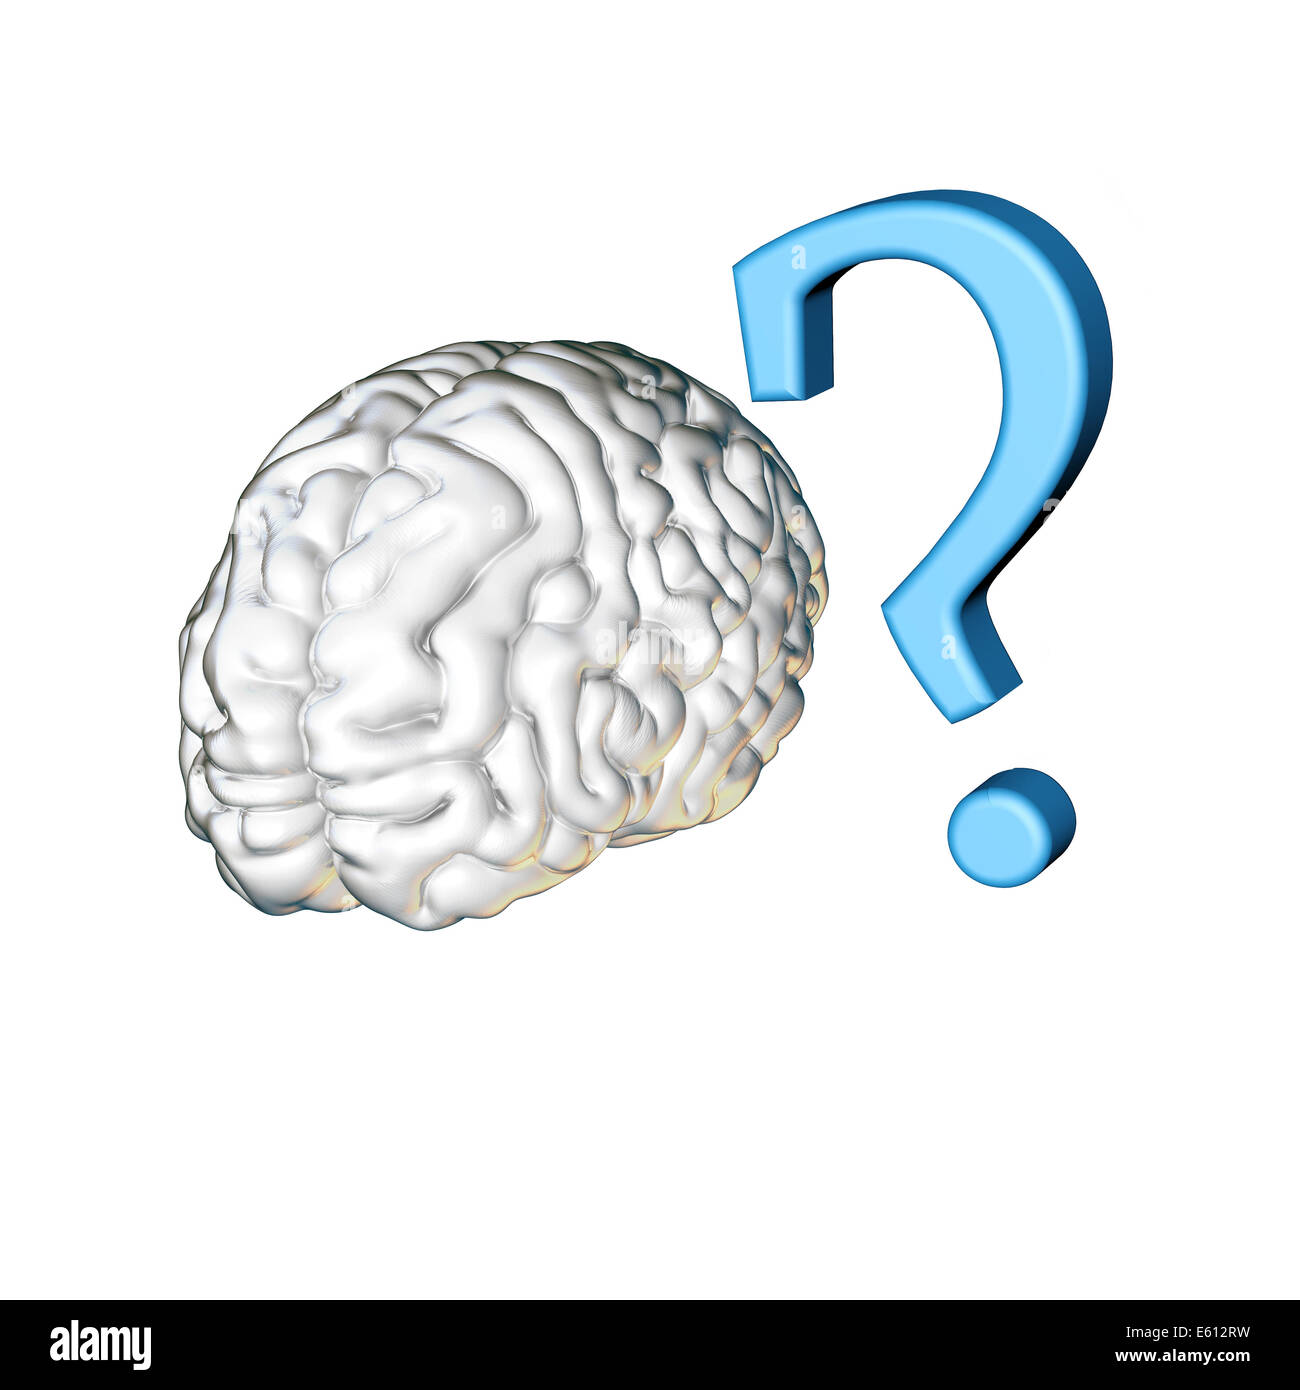 Brain questions. Мозг с вопросительным знаком. Мозш свопросительным знаком. Мозг с вопросиком. Мозг и знак вопроса картинка.